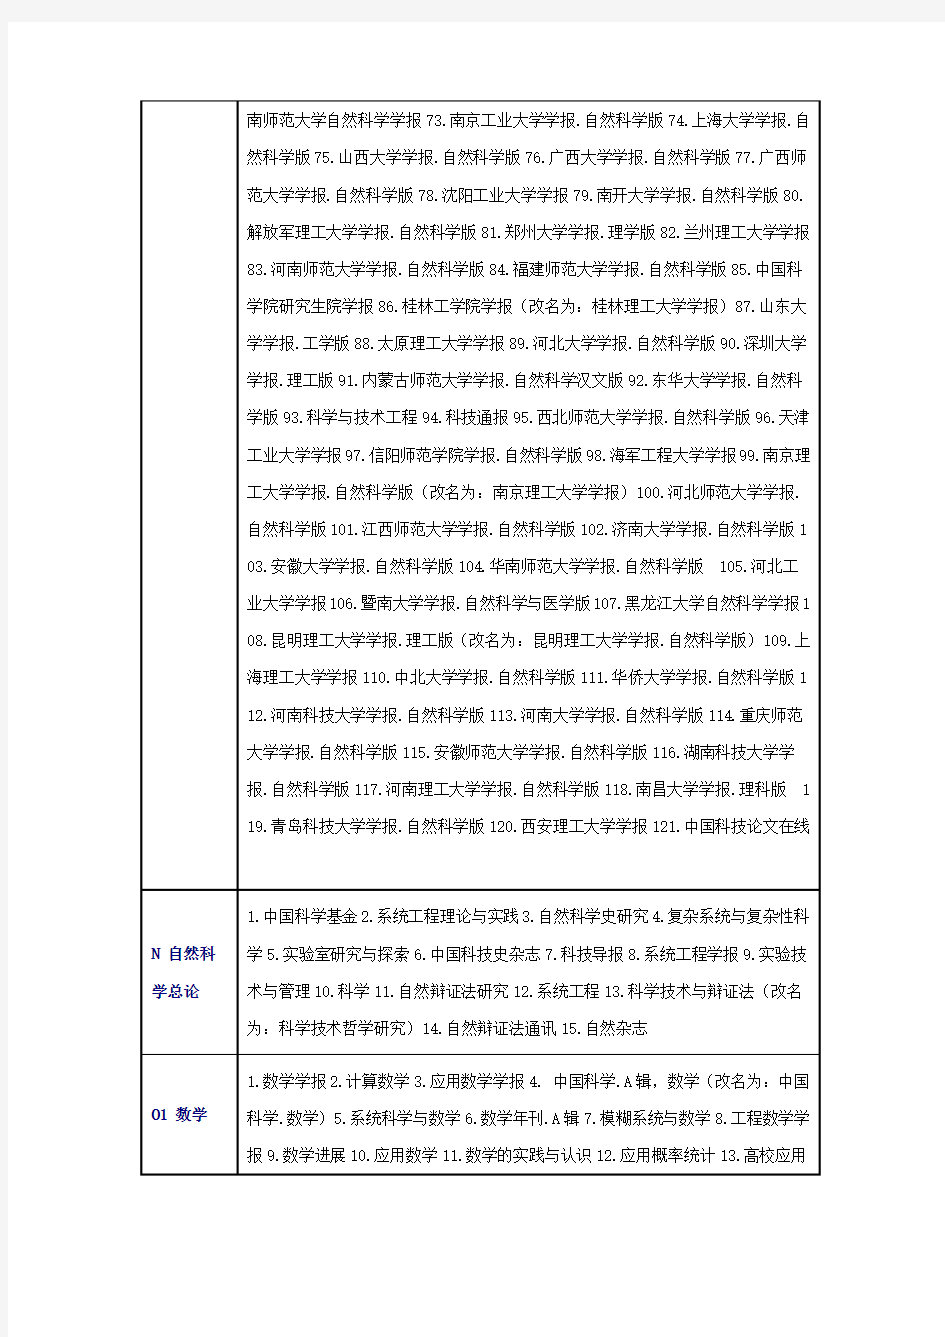 2014年北大版《中文核心期刊要目总览》至2015年